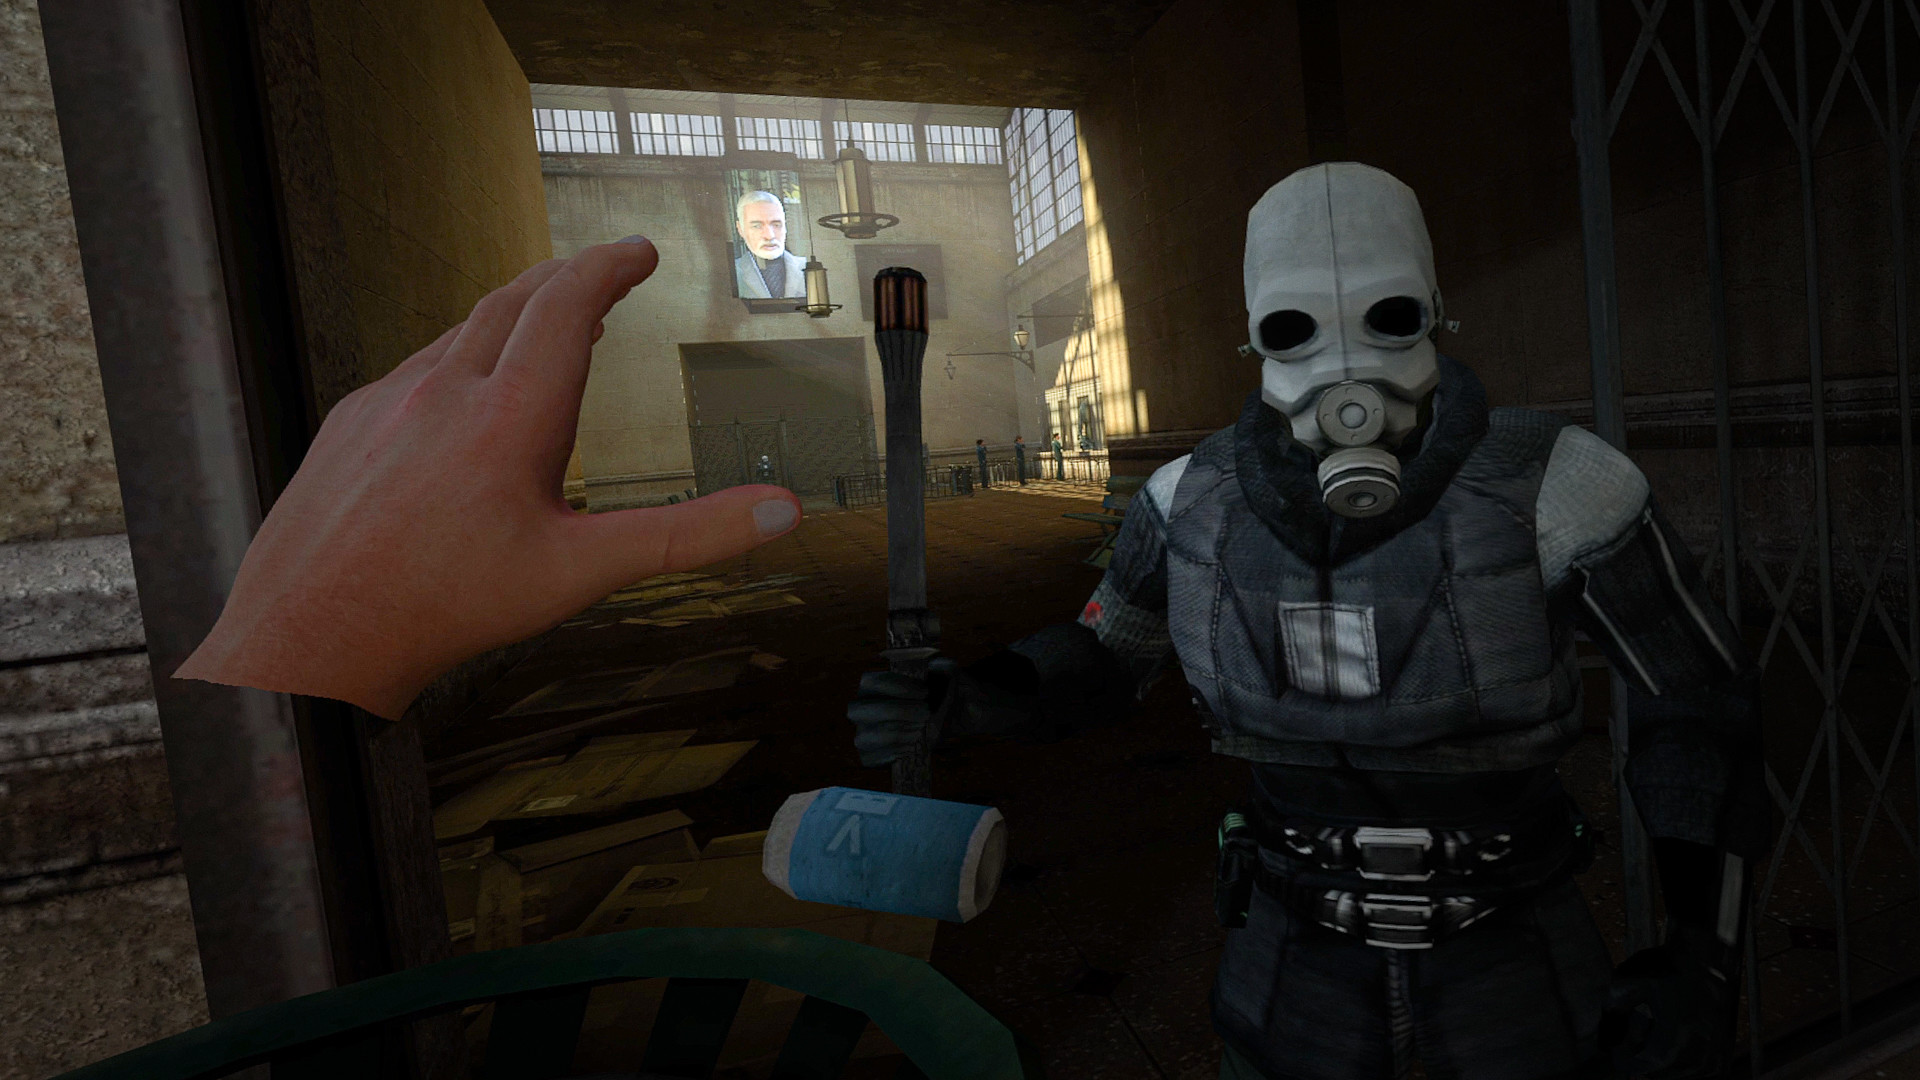 歷經八年坎坷 《戰慄時空2》備受期待VR Mod今日在Steam上推出